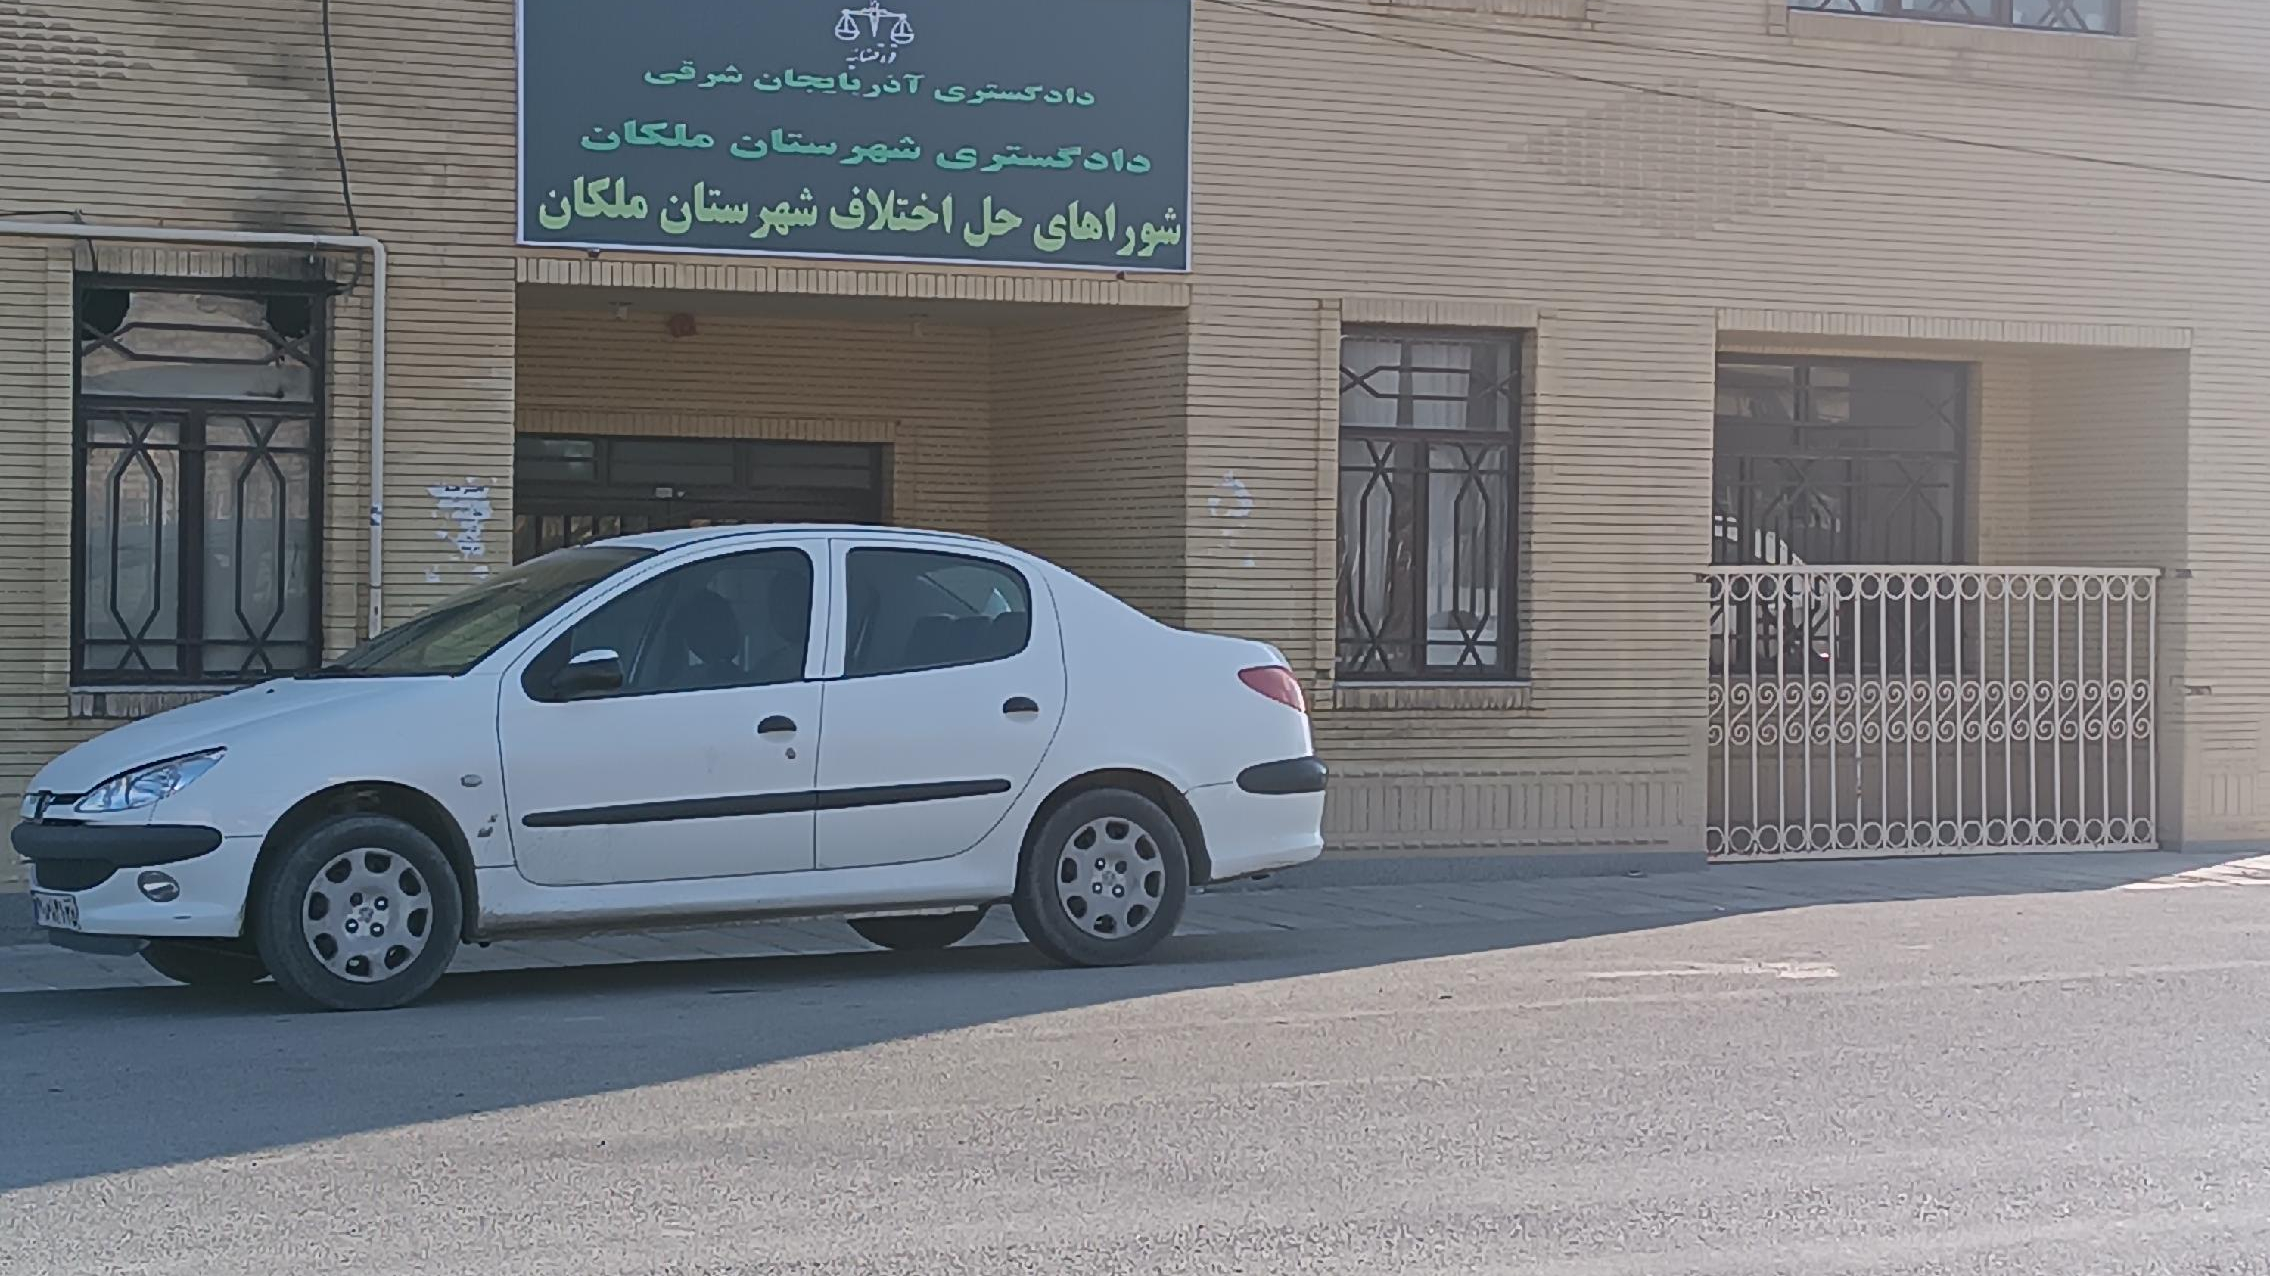 شورای حل اختلاف شهرستان ملکان